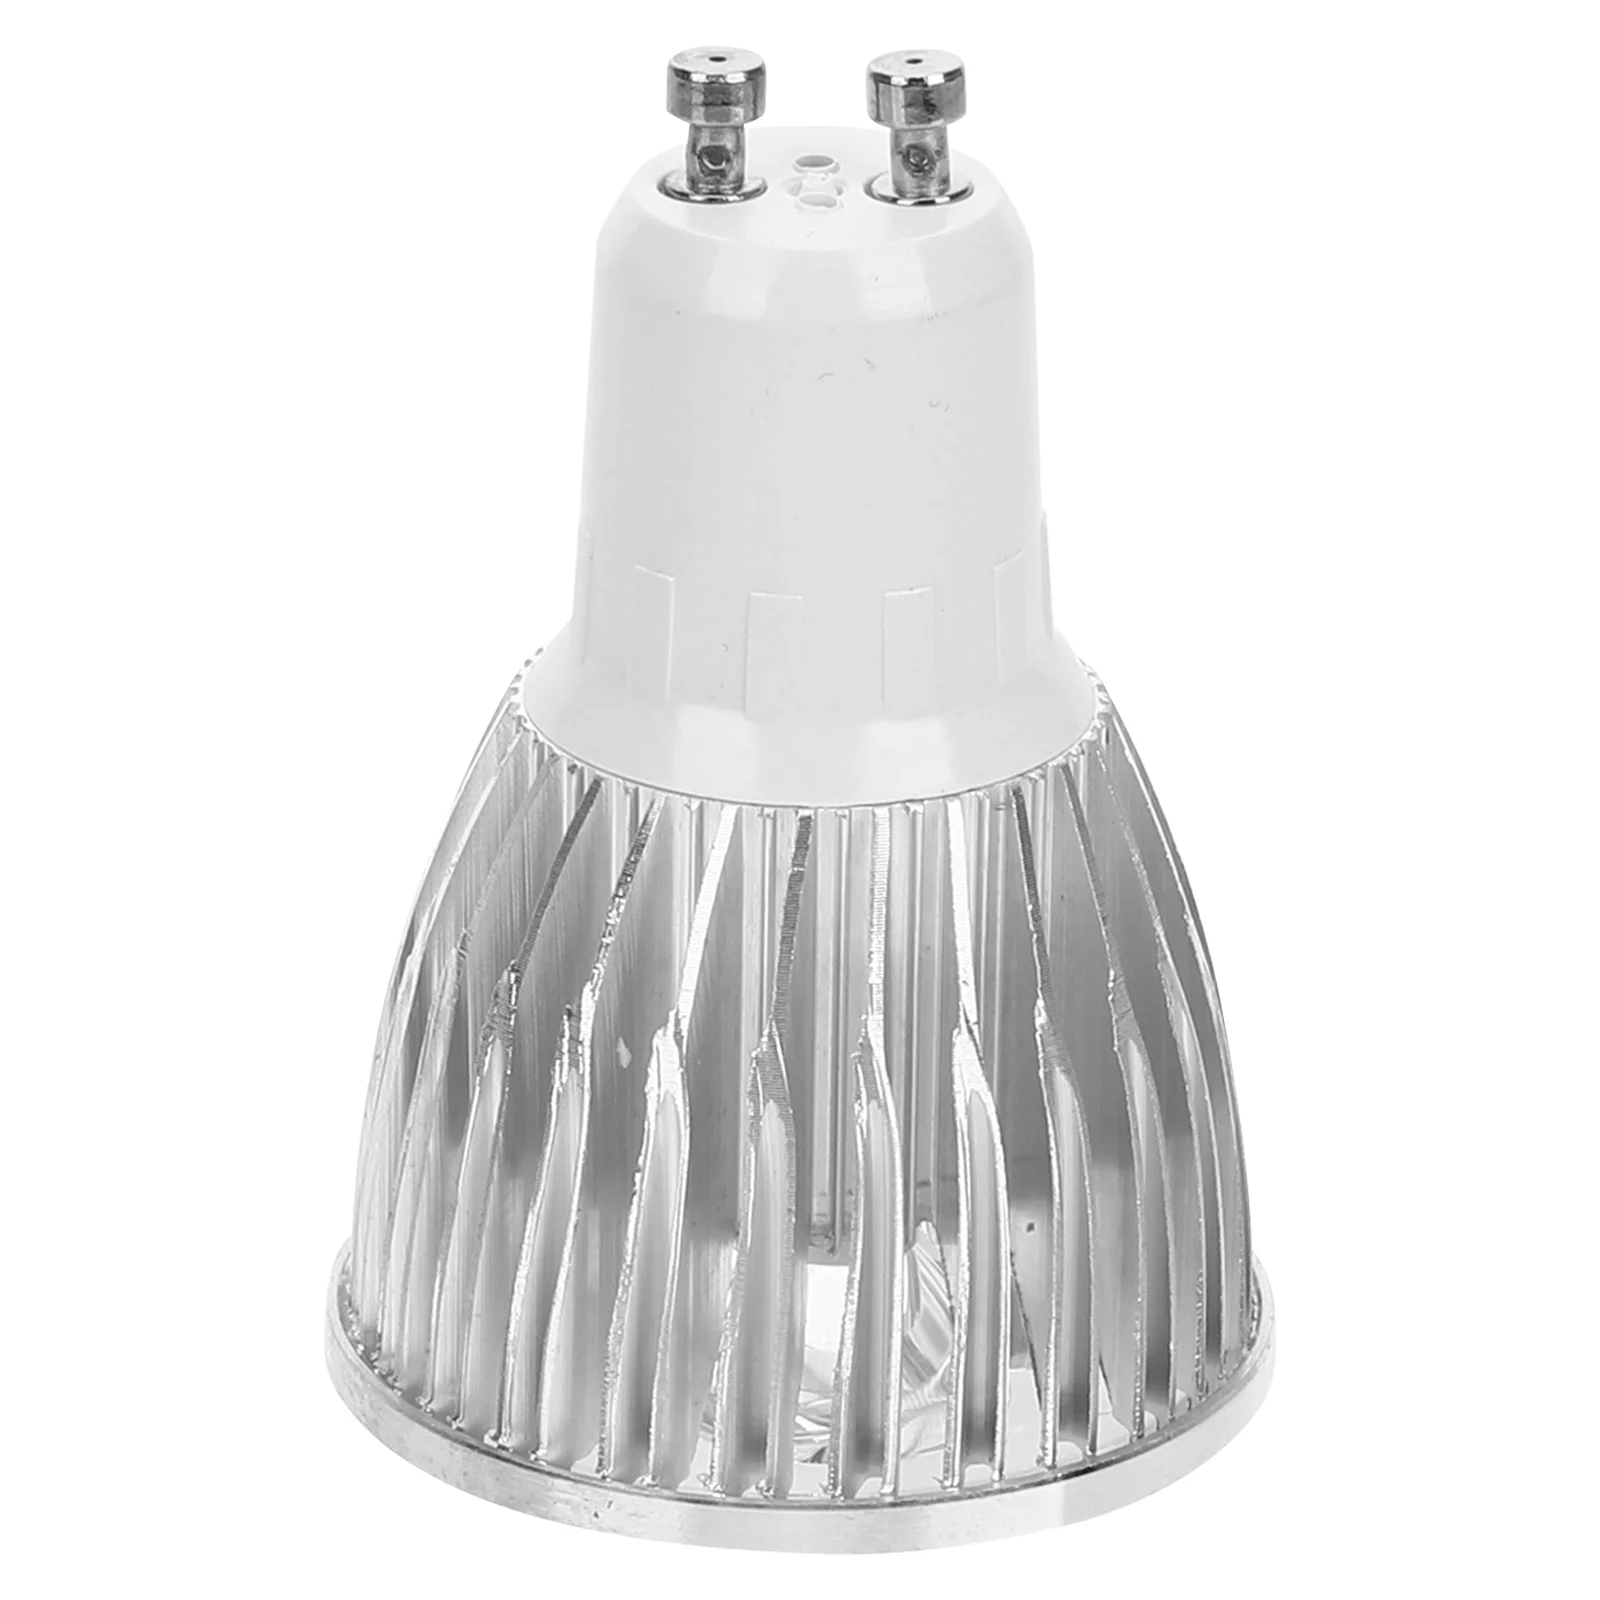 

Нагревательная лампа для воска, лампочка с 2 зубцами, светодиодная лампочка Gu10, сменная лампочка для нагревателя